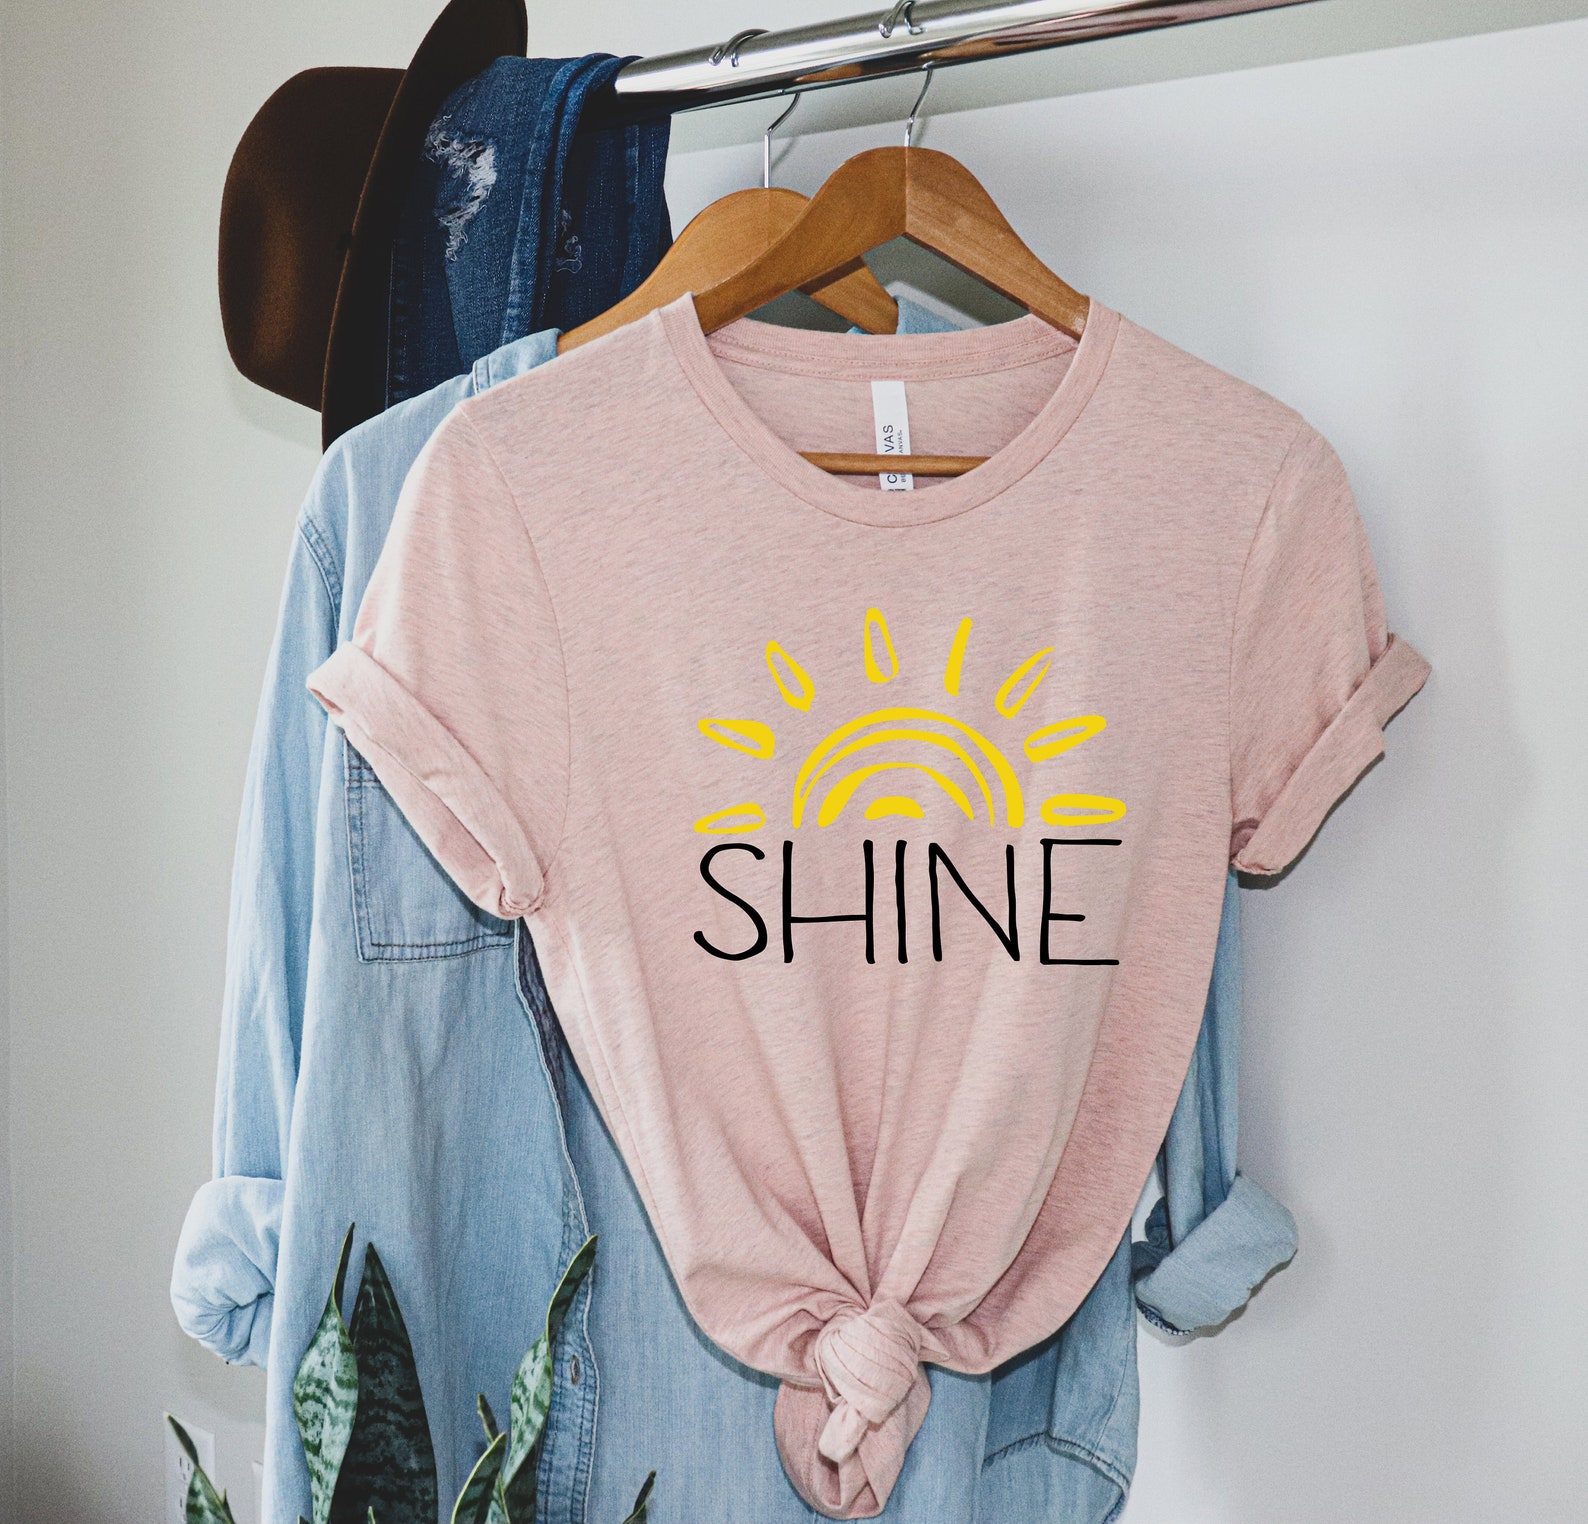 Shine Tshirt Soulshine Shirt Solu Shine T-Shirt Shine | Etsy